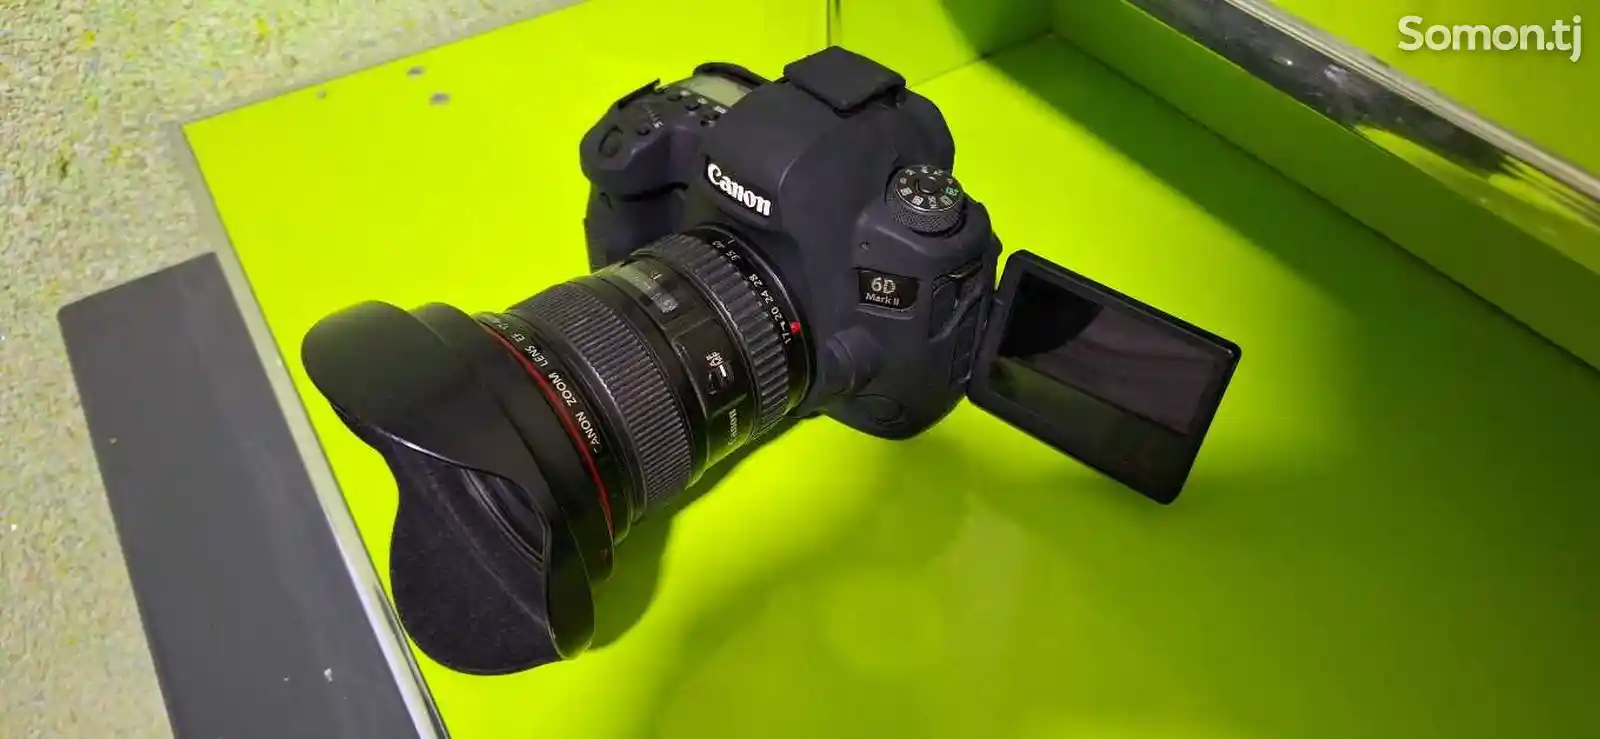 Фотоаппарат Canon 6d markll c объективом 17-40mm